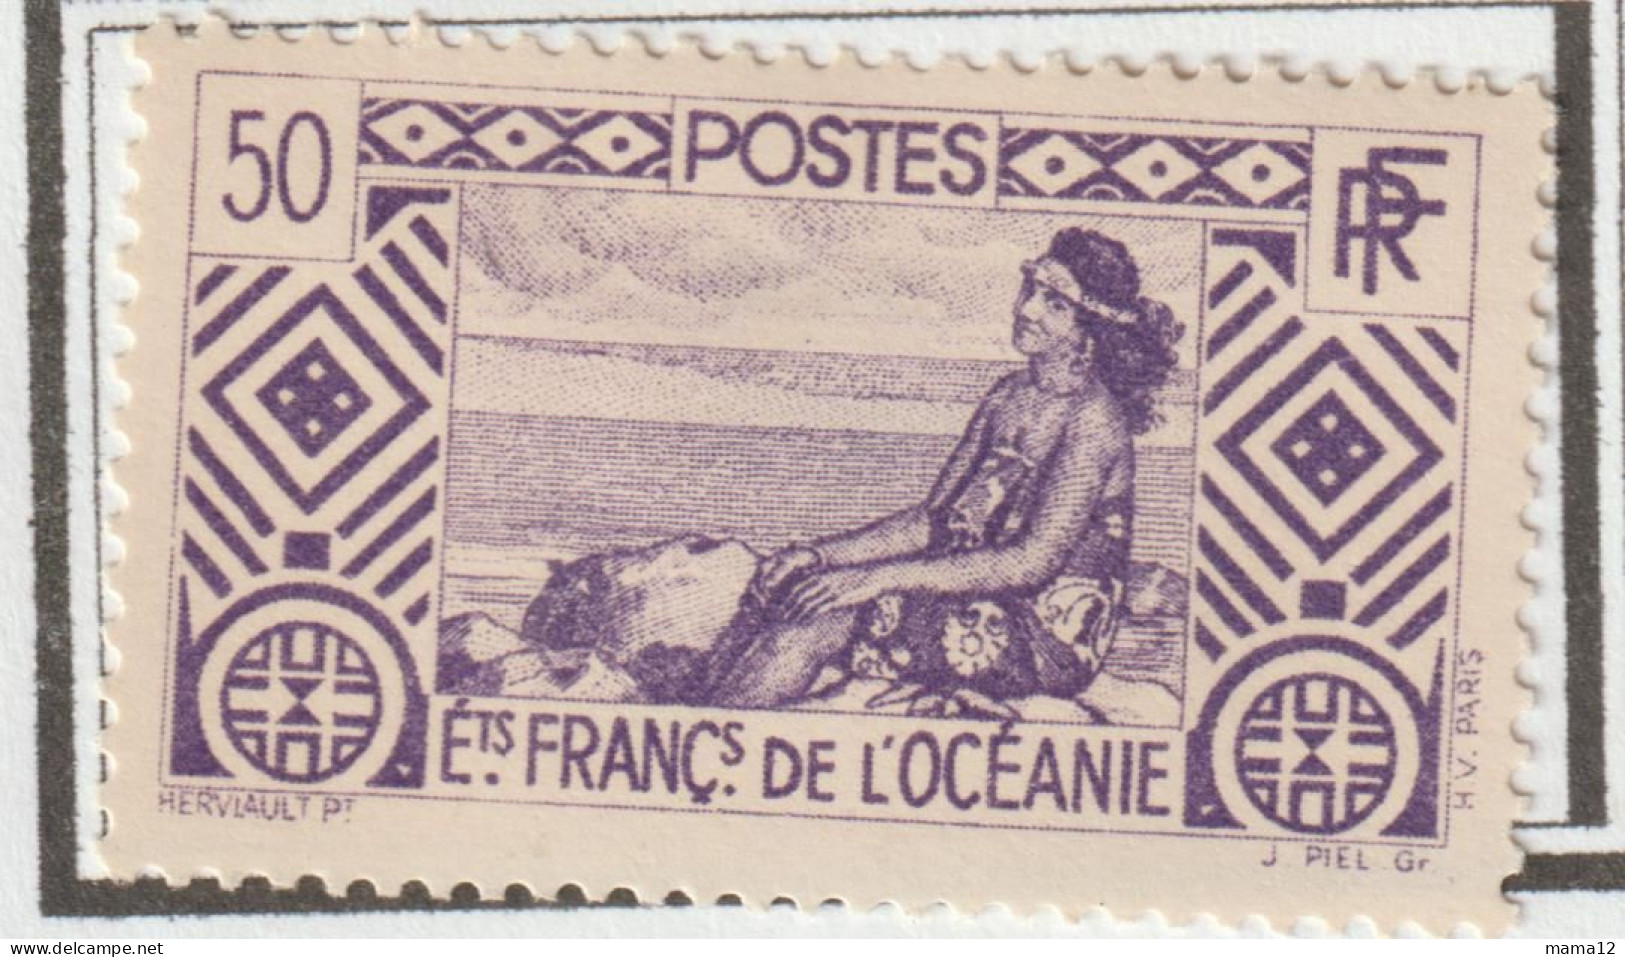 FRANCE - Ex Colonies - OCEANIE - YT - TP n° 2-27-84-87-89-99-185-186 + TAXES n° 18 - 10% de la cote